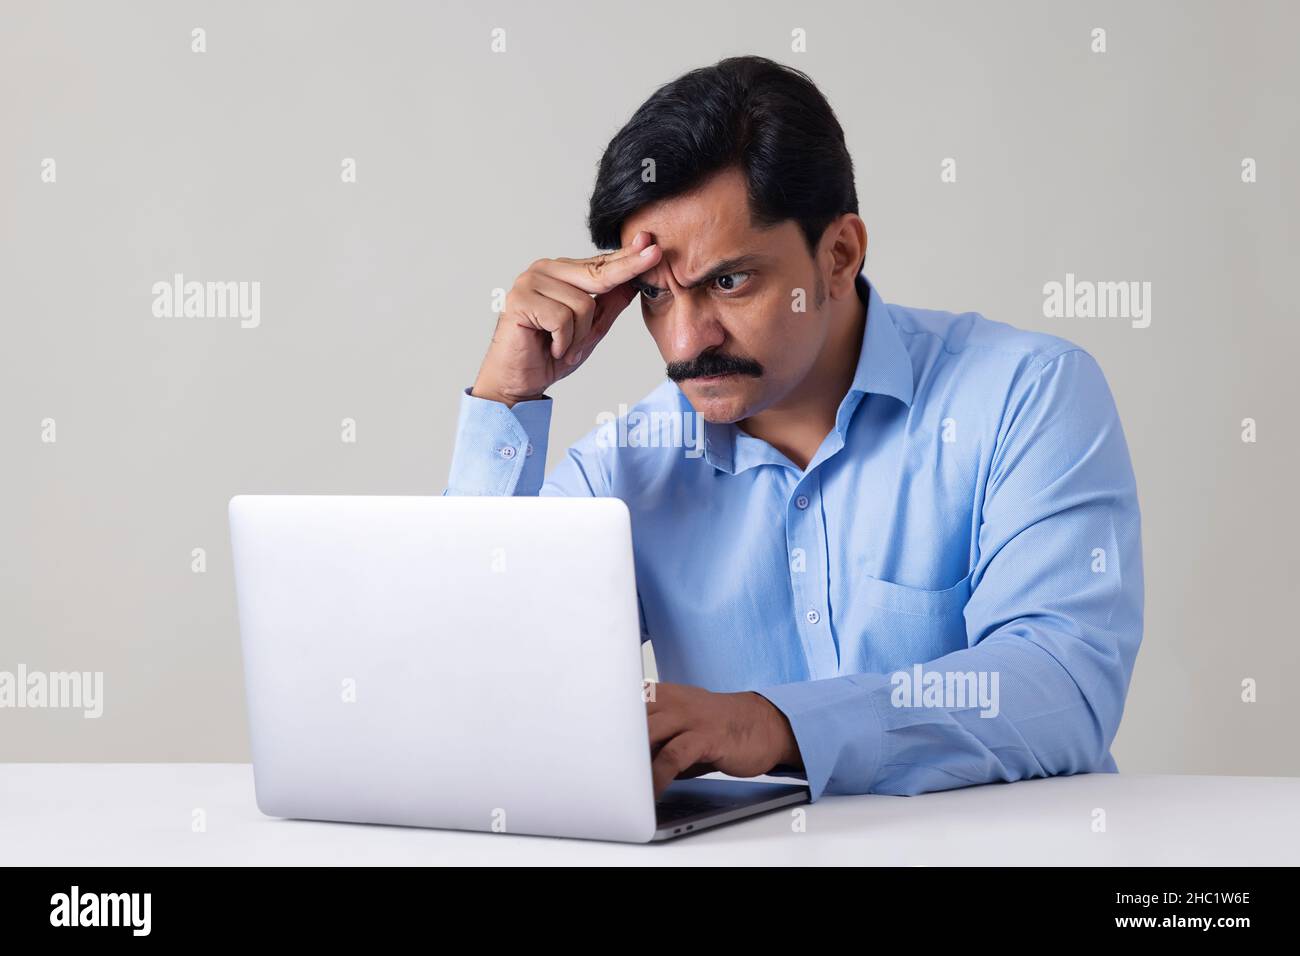 Porträt eines stressigen Mannes, der die Hand auf die Stirn hält, während er mit einem Laptop im Büro arbeitet Stockfoto